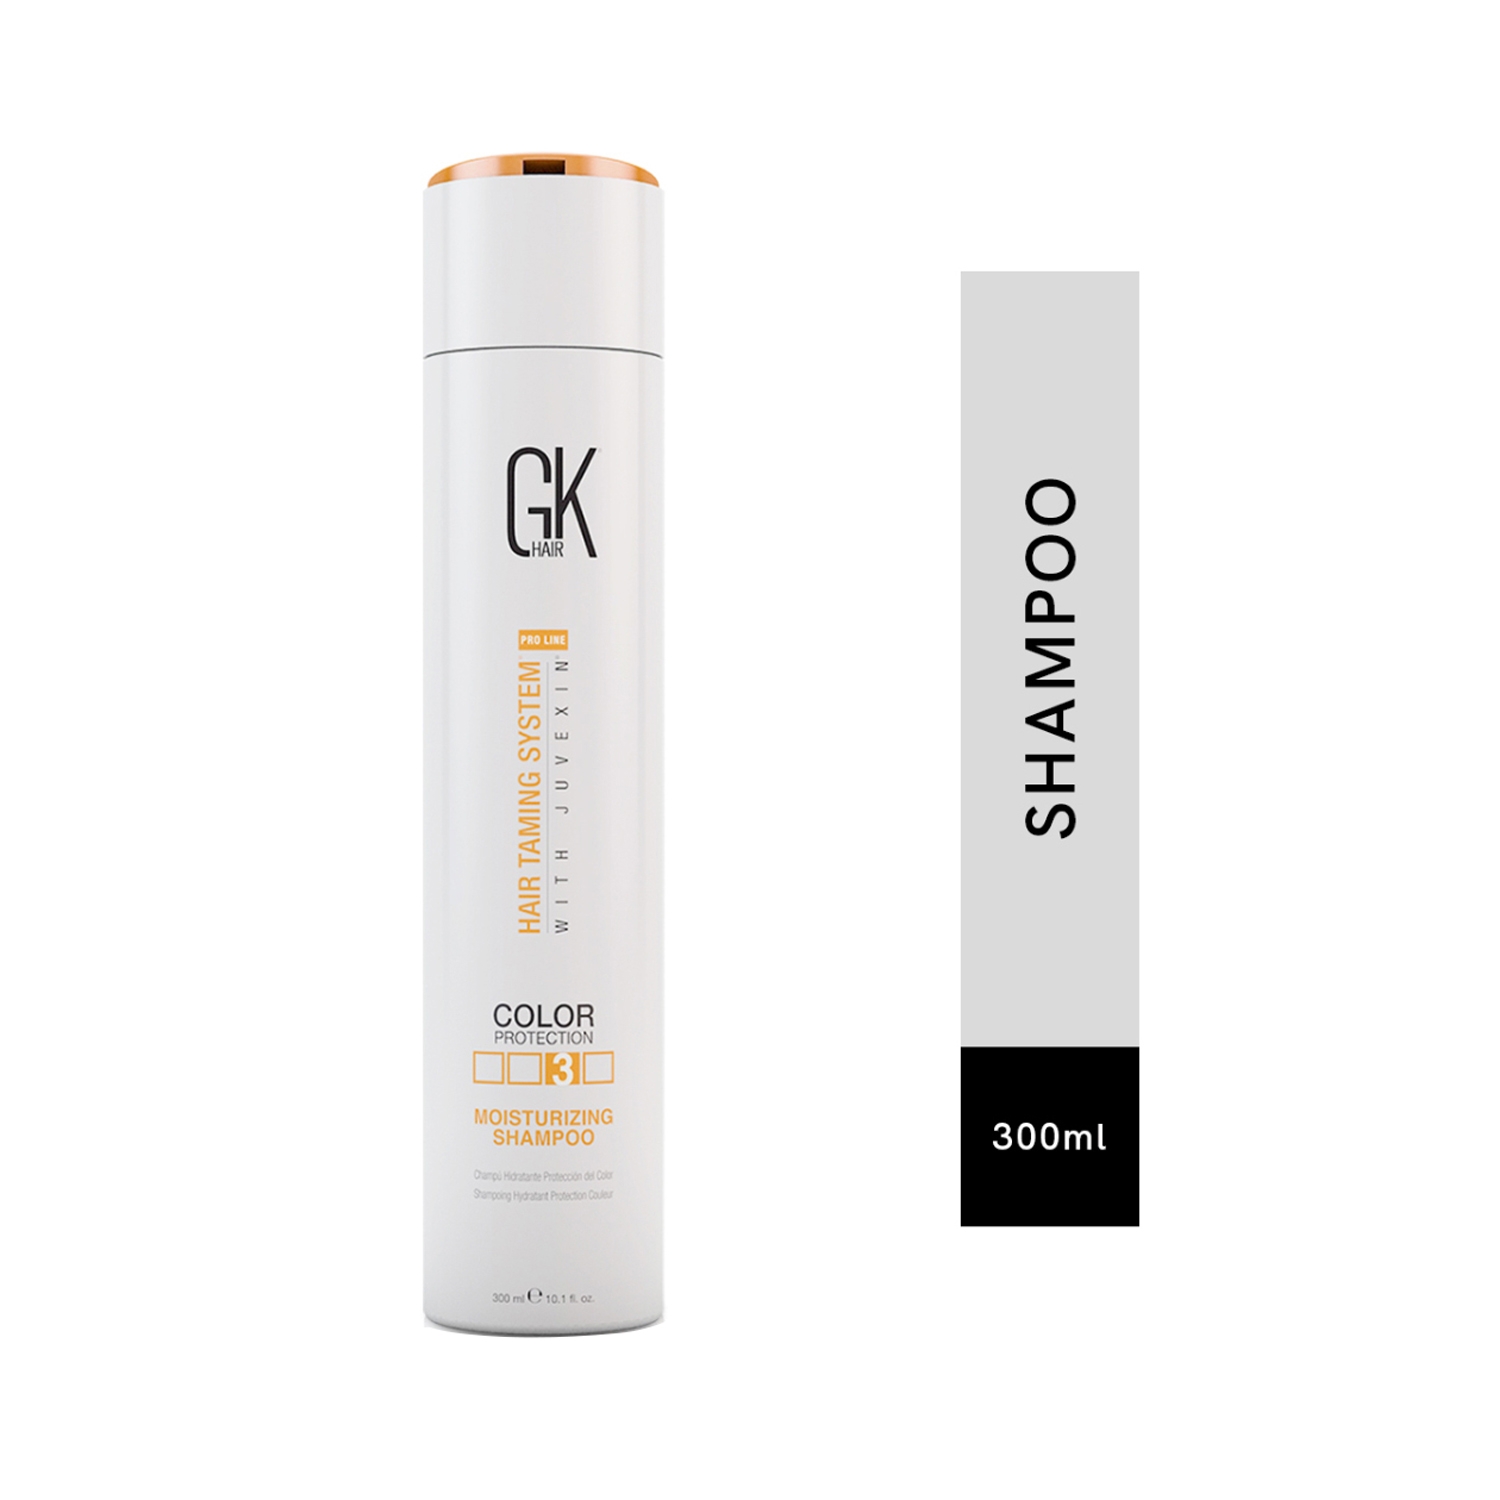 GK Hair | GK Hair Moisturizing Color Protection Shampoo (300ml)